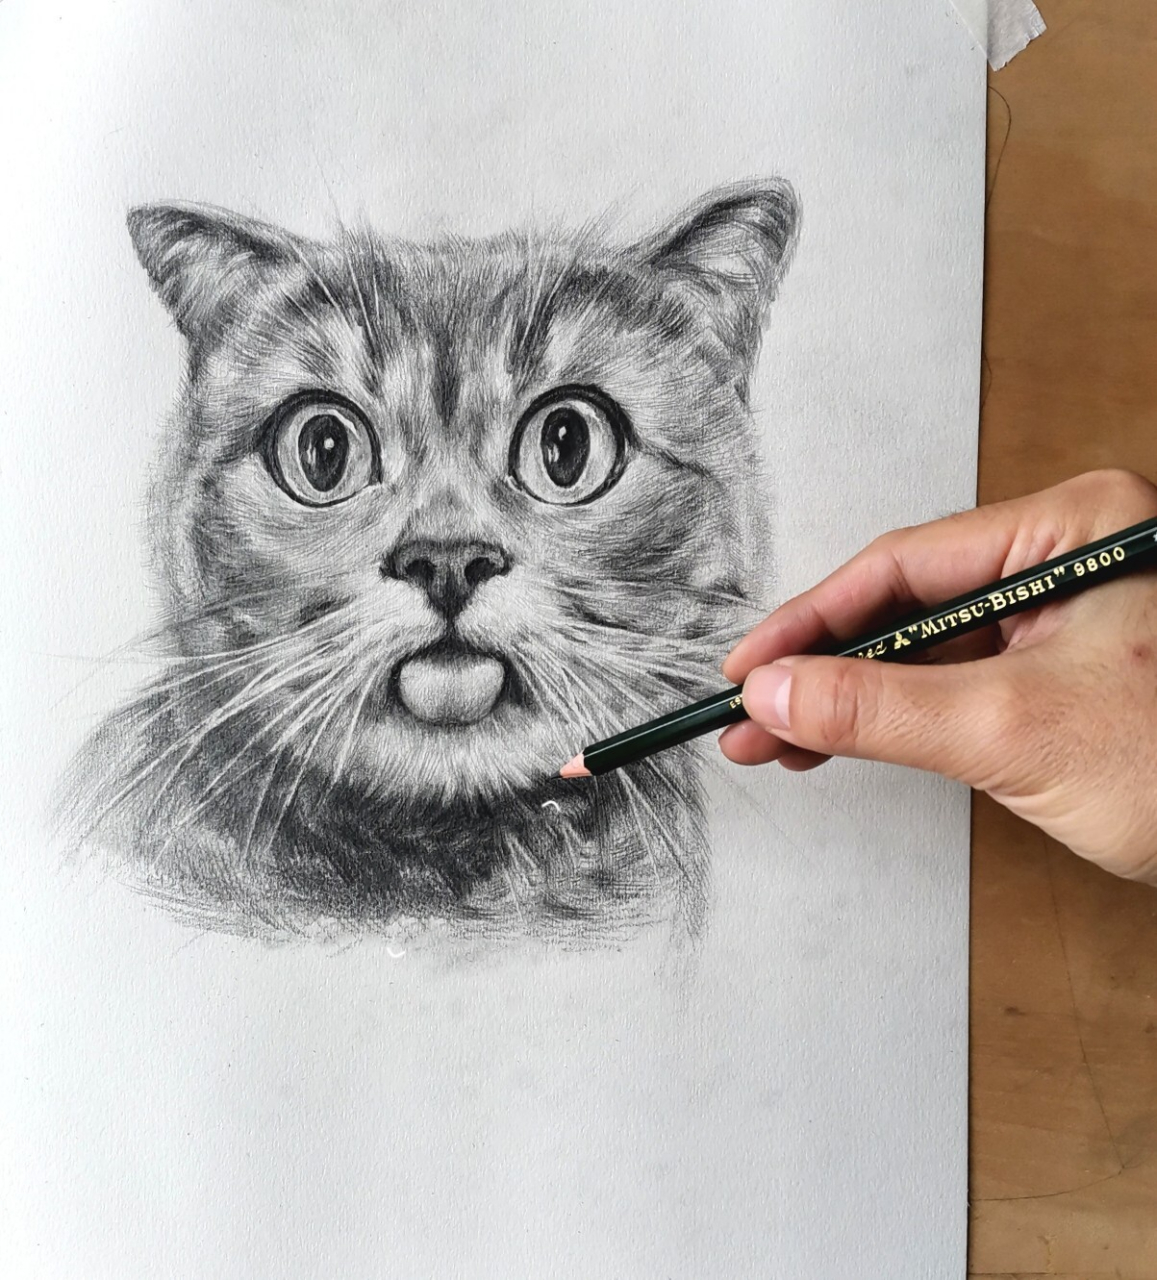 画了一只猫咪素描铅笔画(附教程) 许久没用铅笔画素描画了,今天尝试了